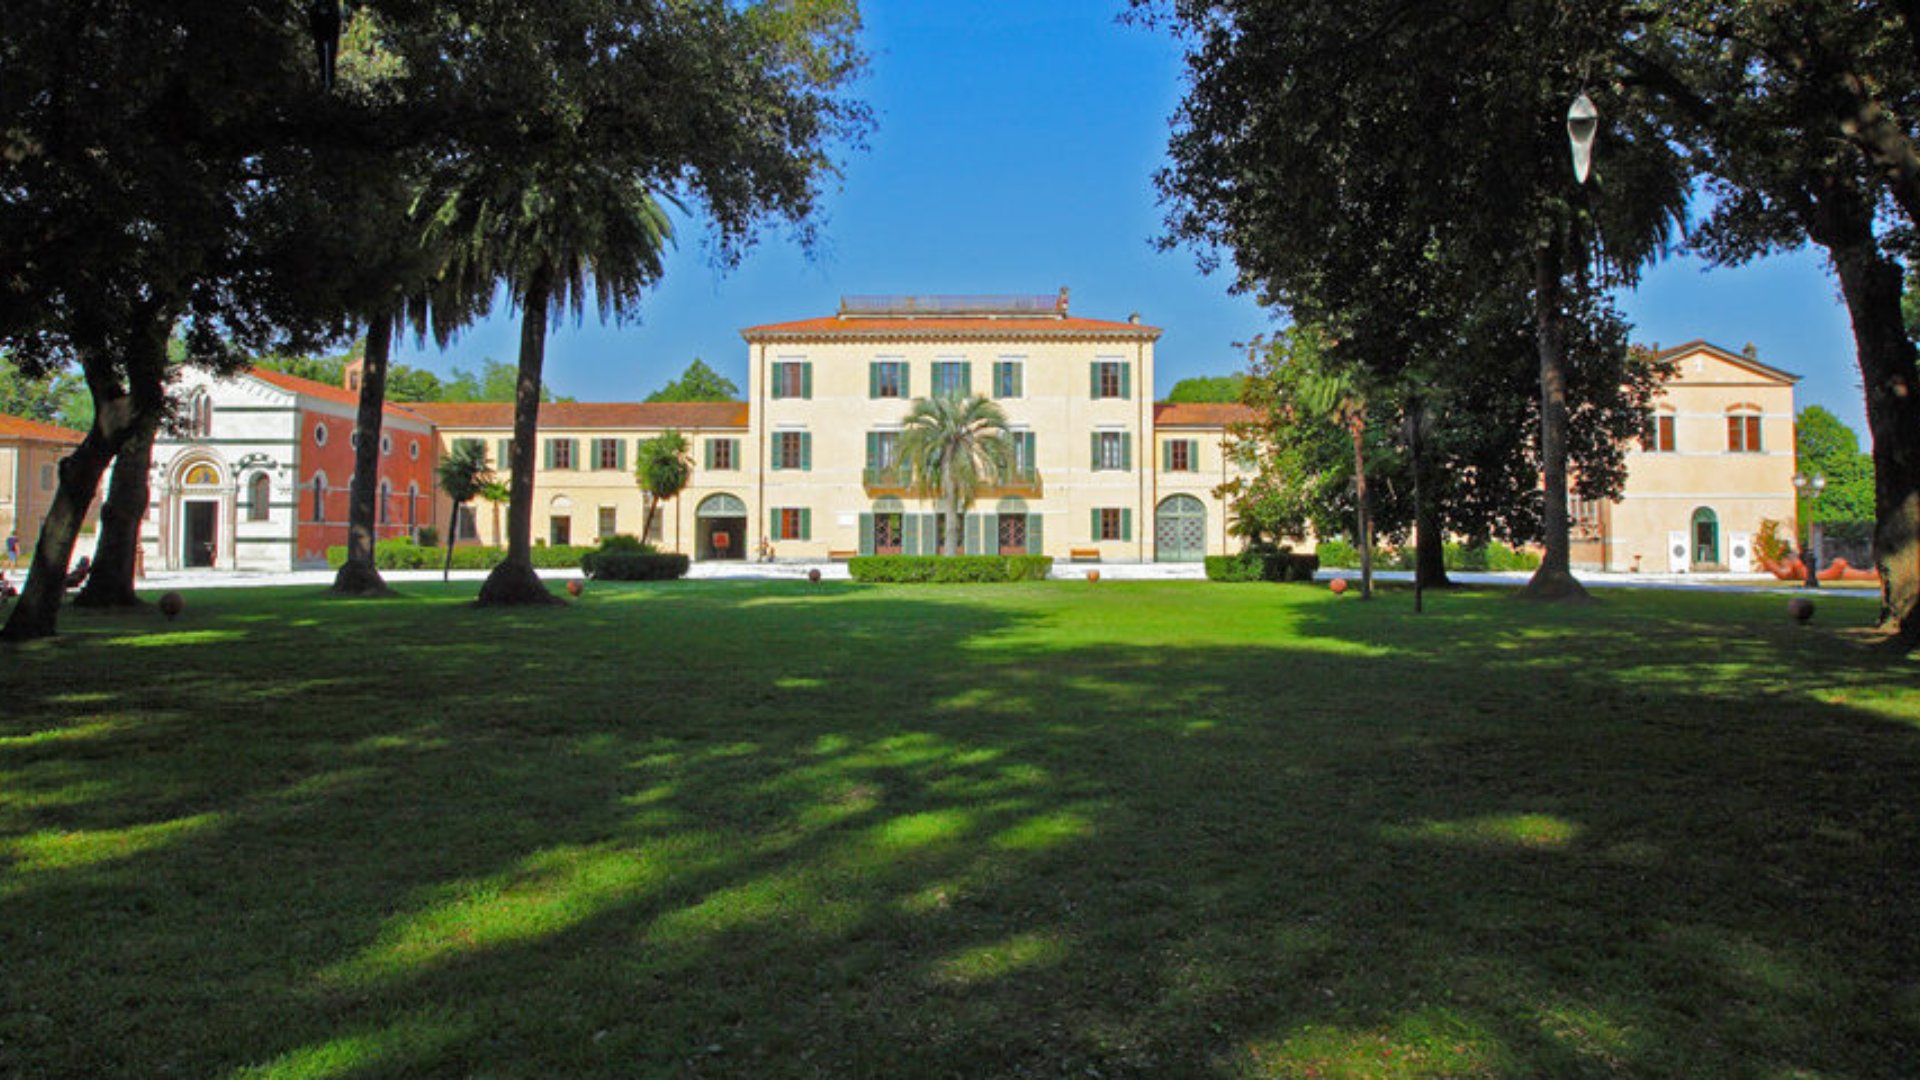 Villa Borbone à Viareggio